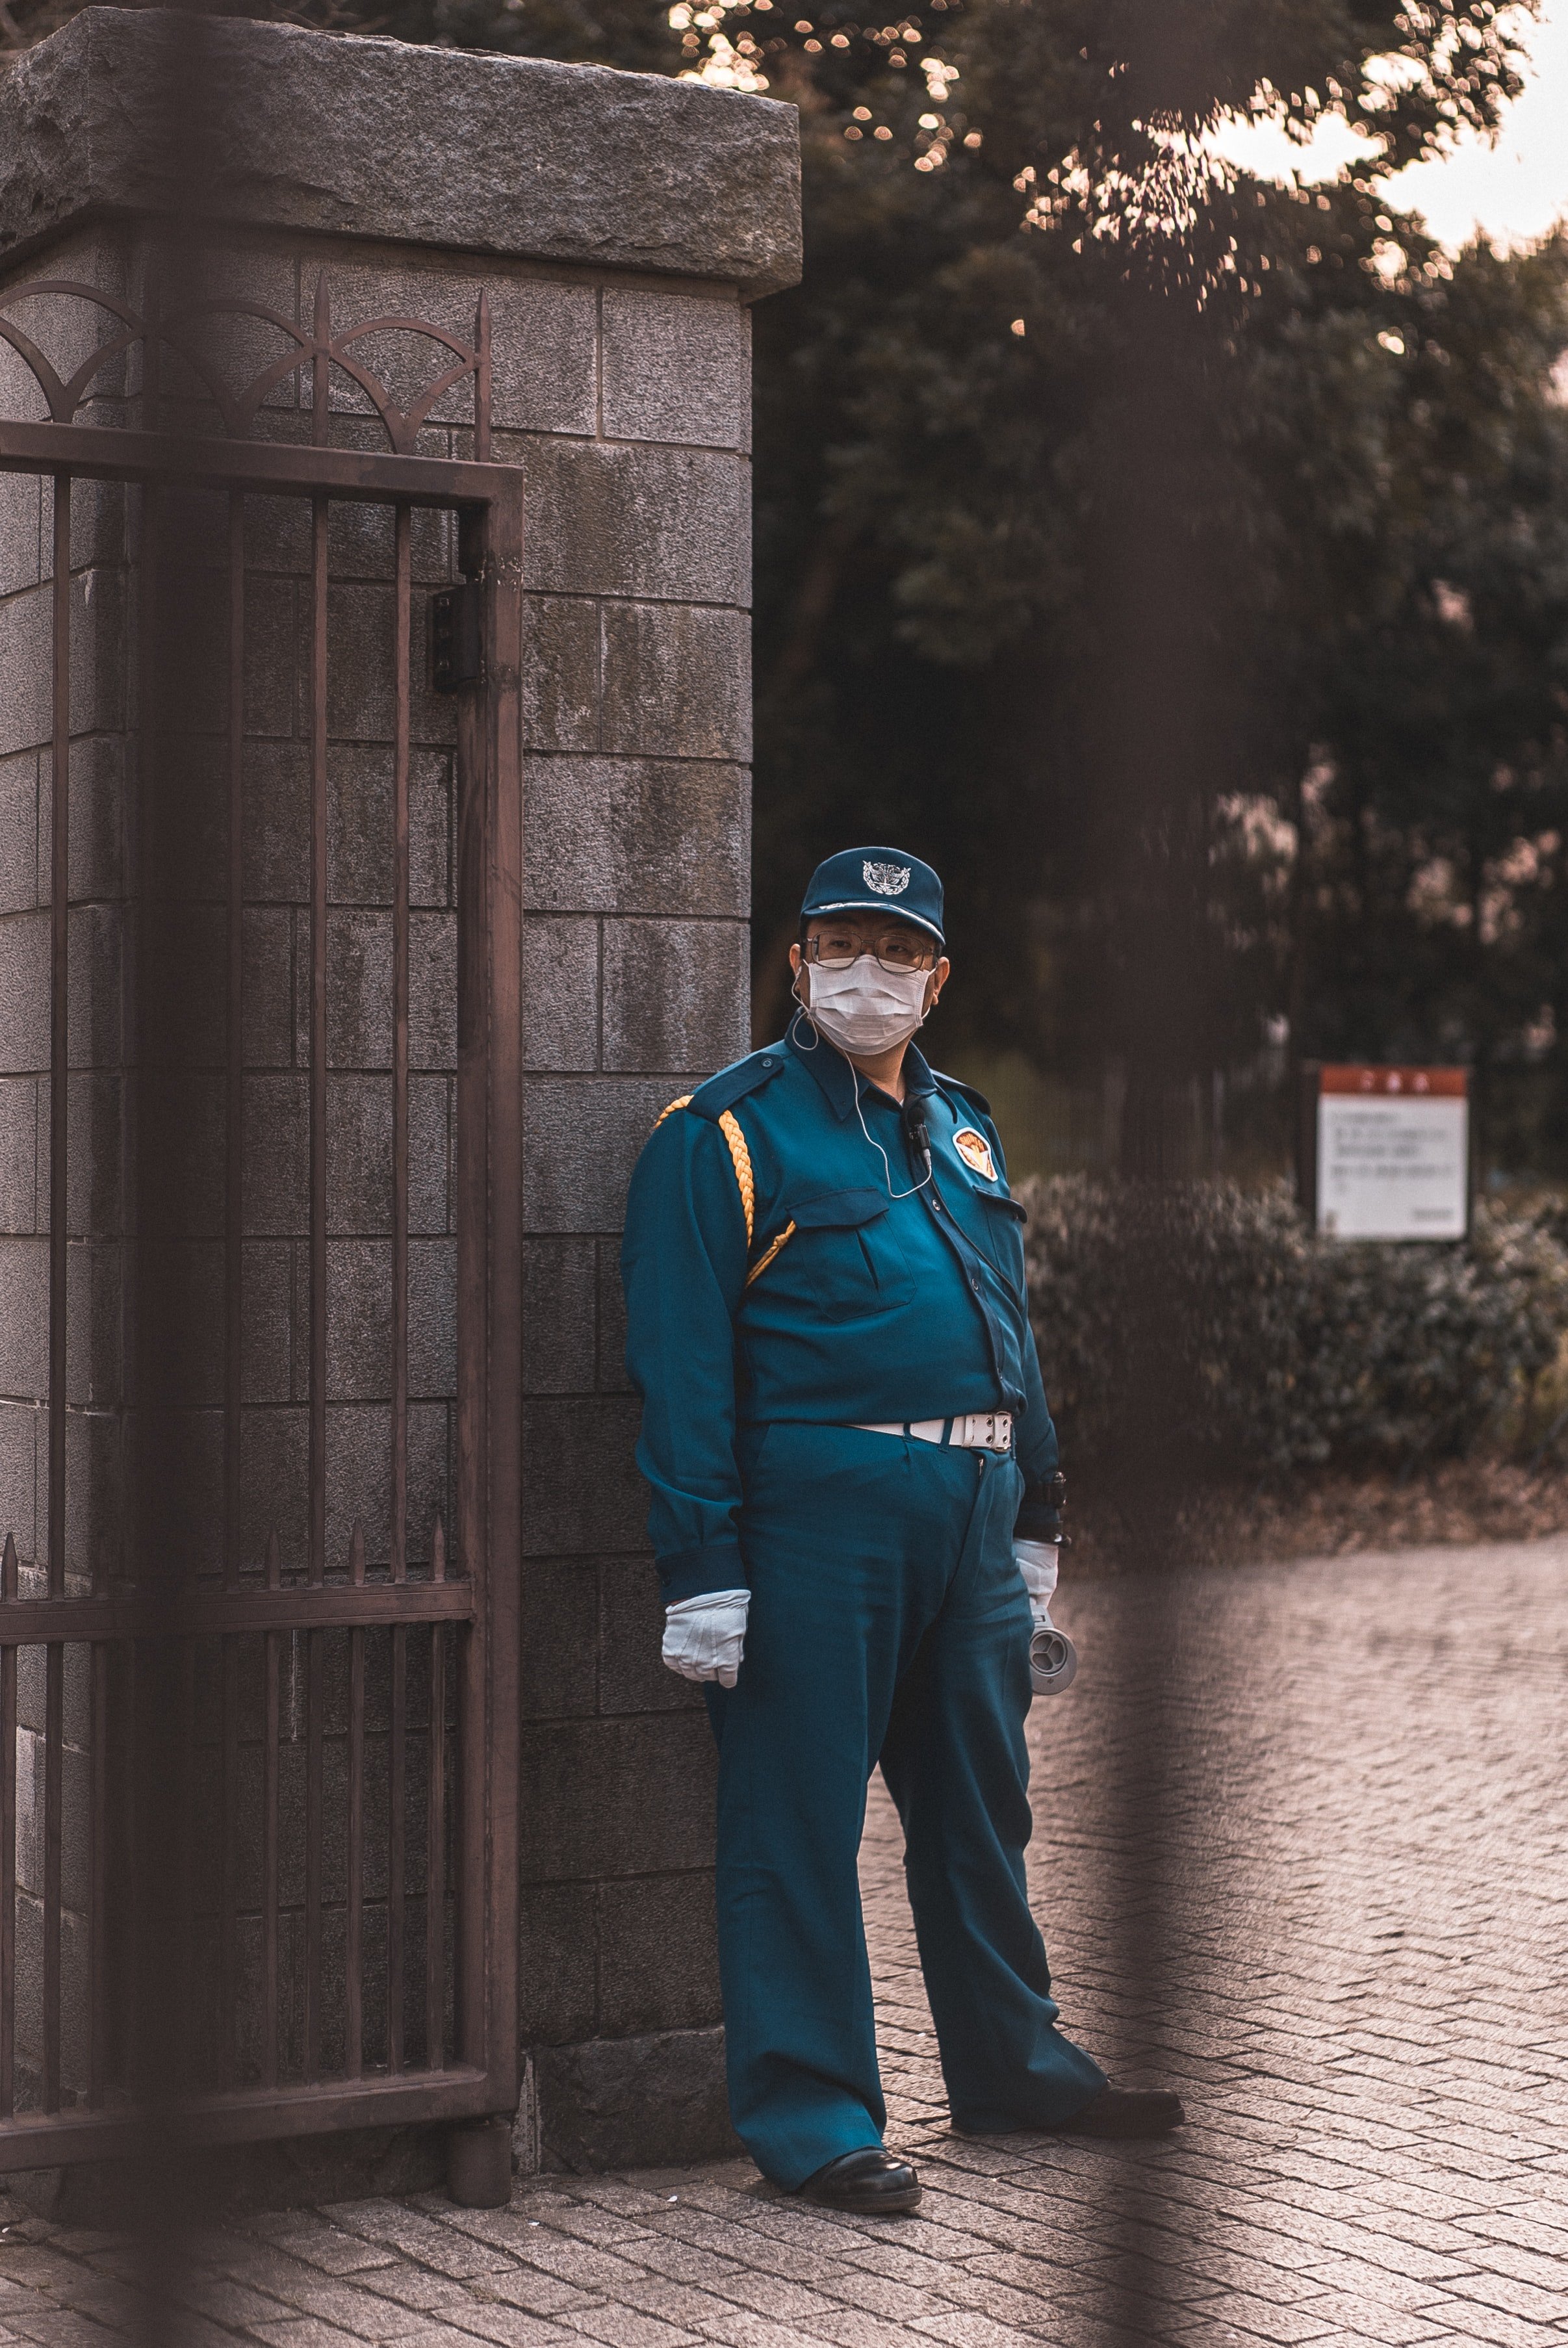 Agente de seguridad custodiando la entrada. | Foto: Unsplash